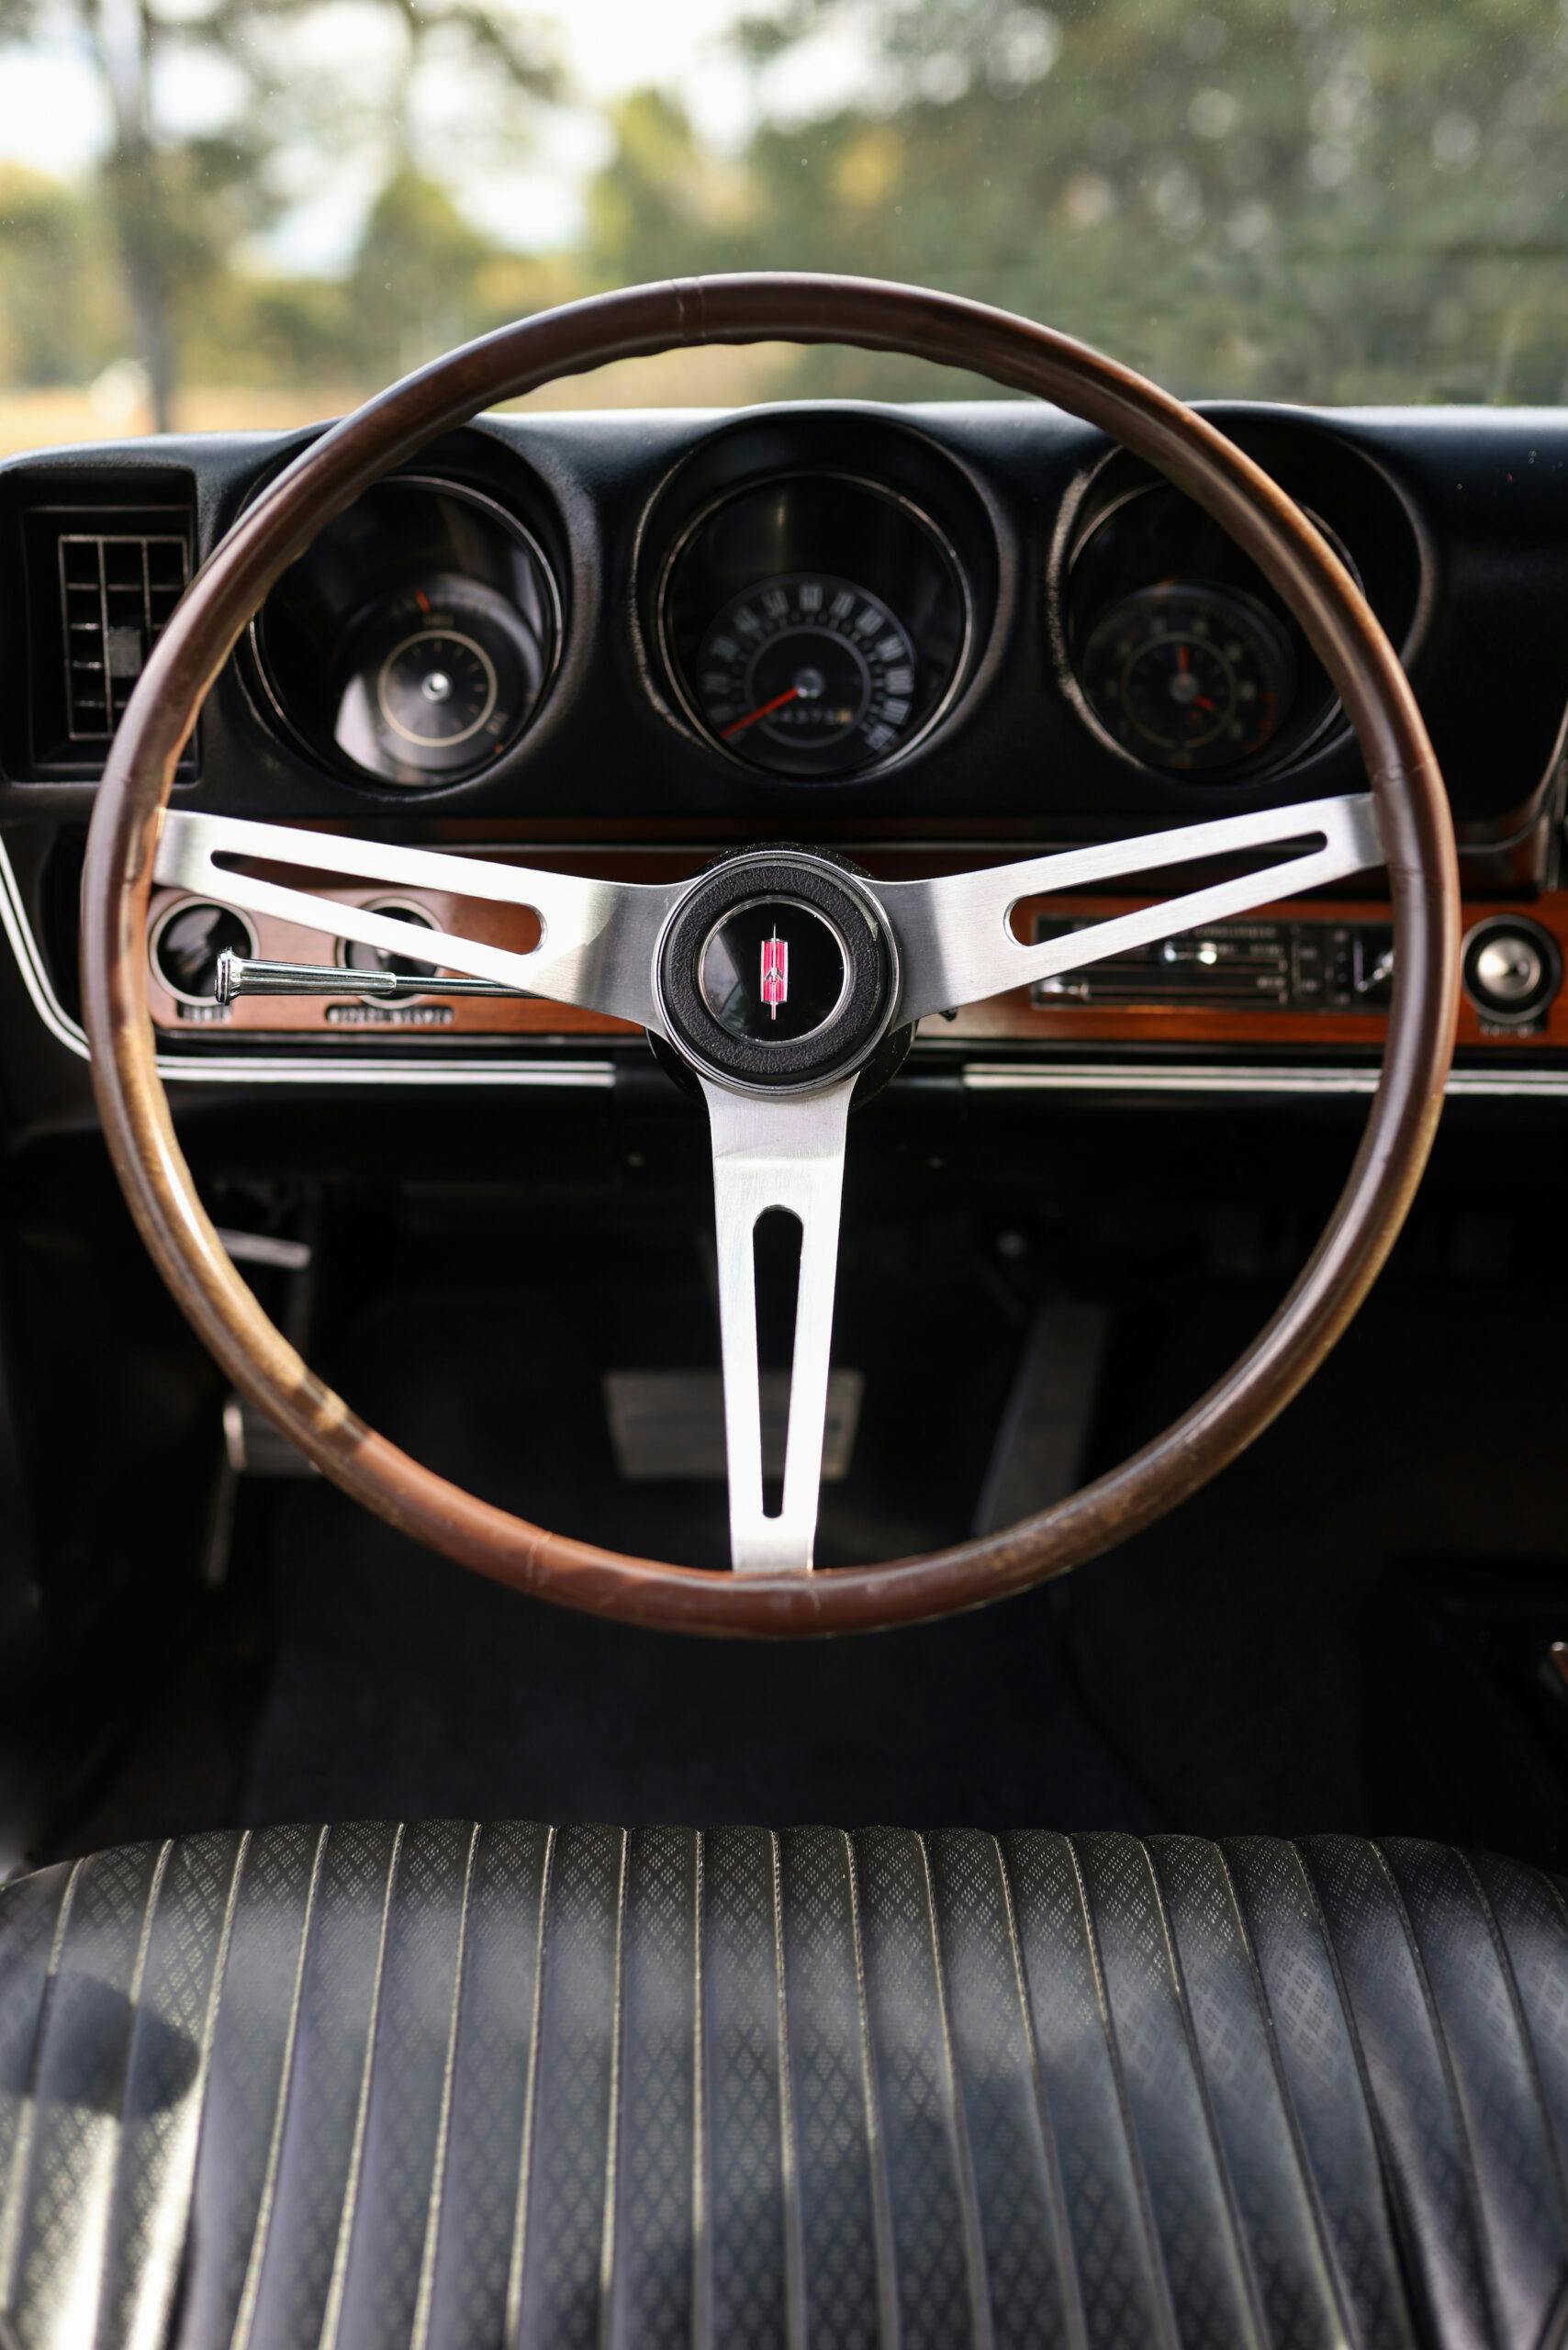 1968 Hurst Oldsmobile interior steering wheel vertical